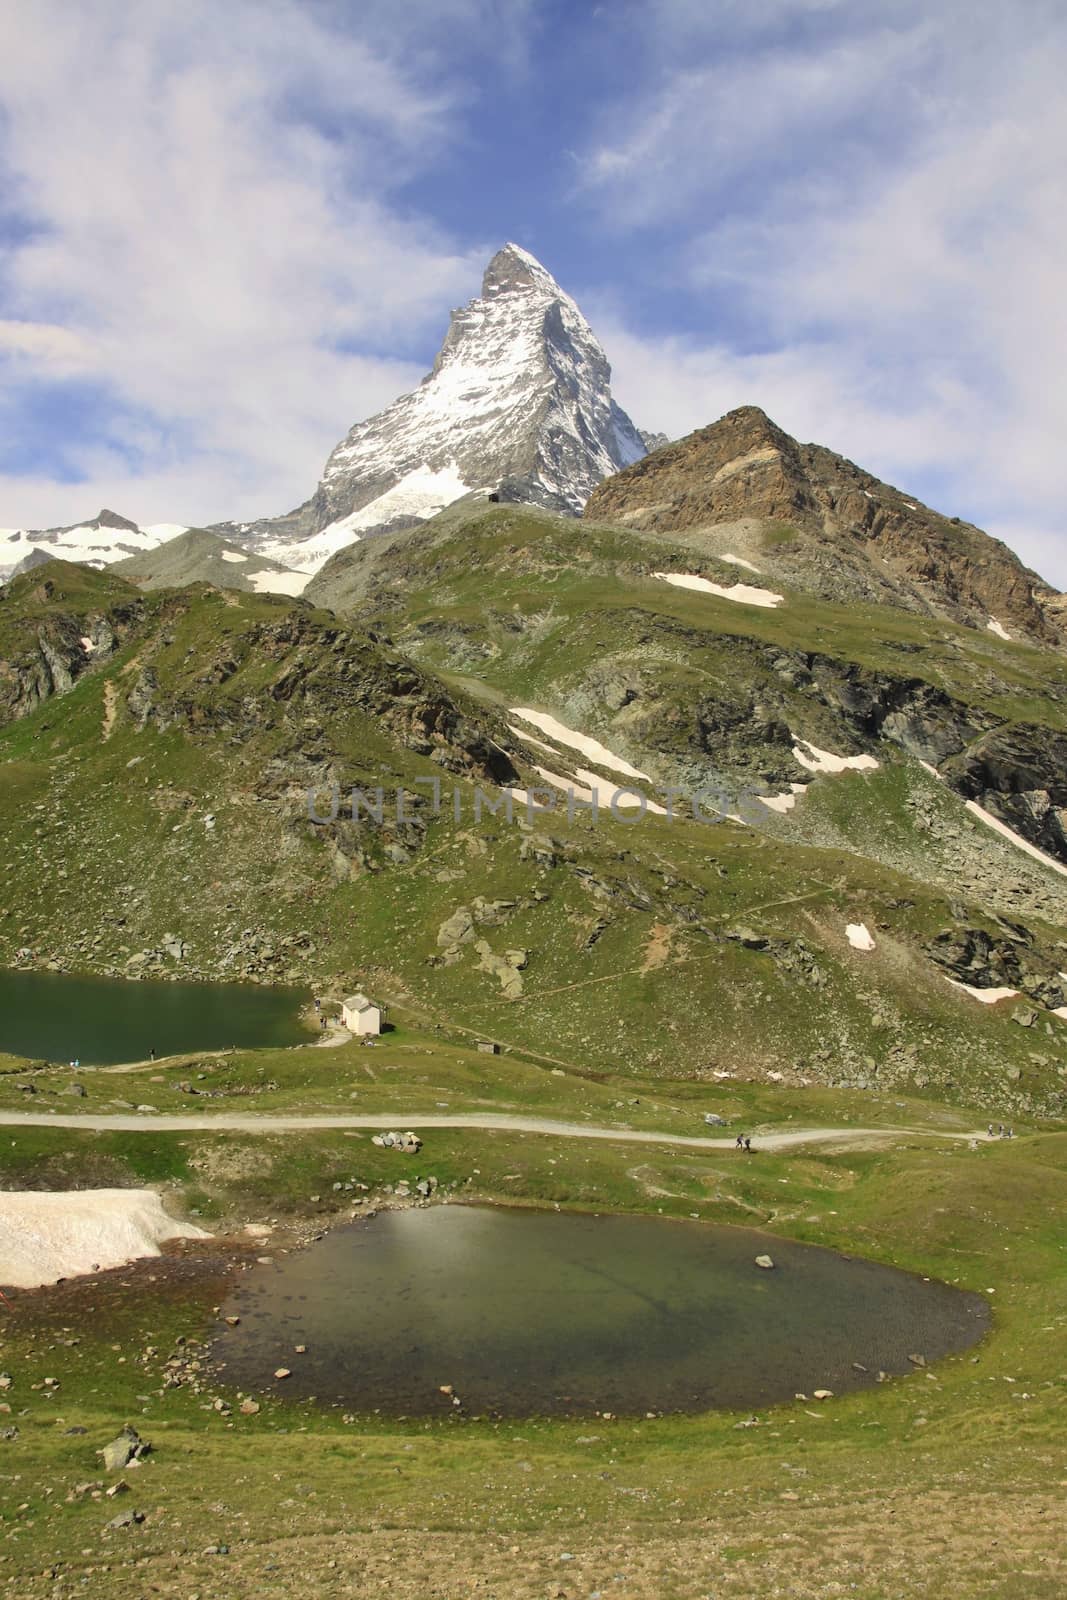 The Matterhorn has become emblem of the Swiss Alps. 